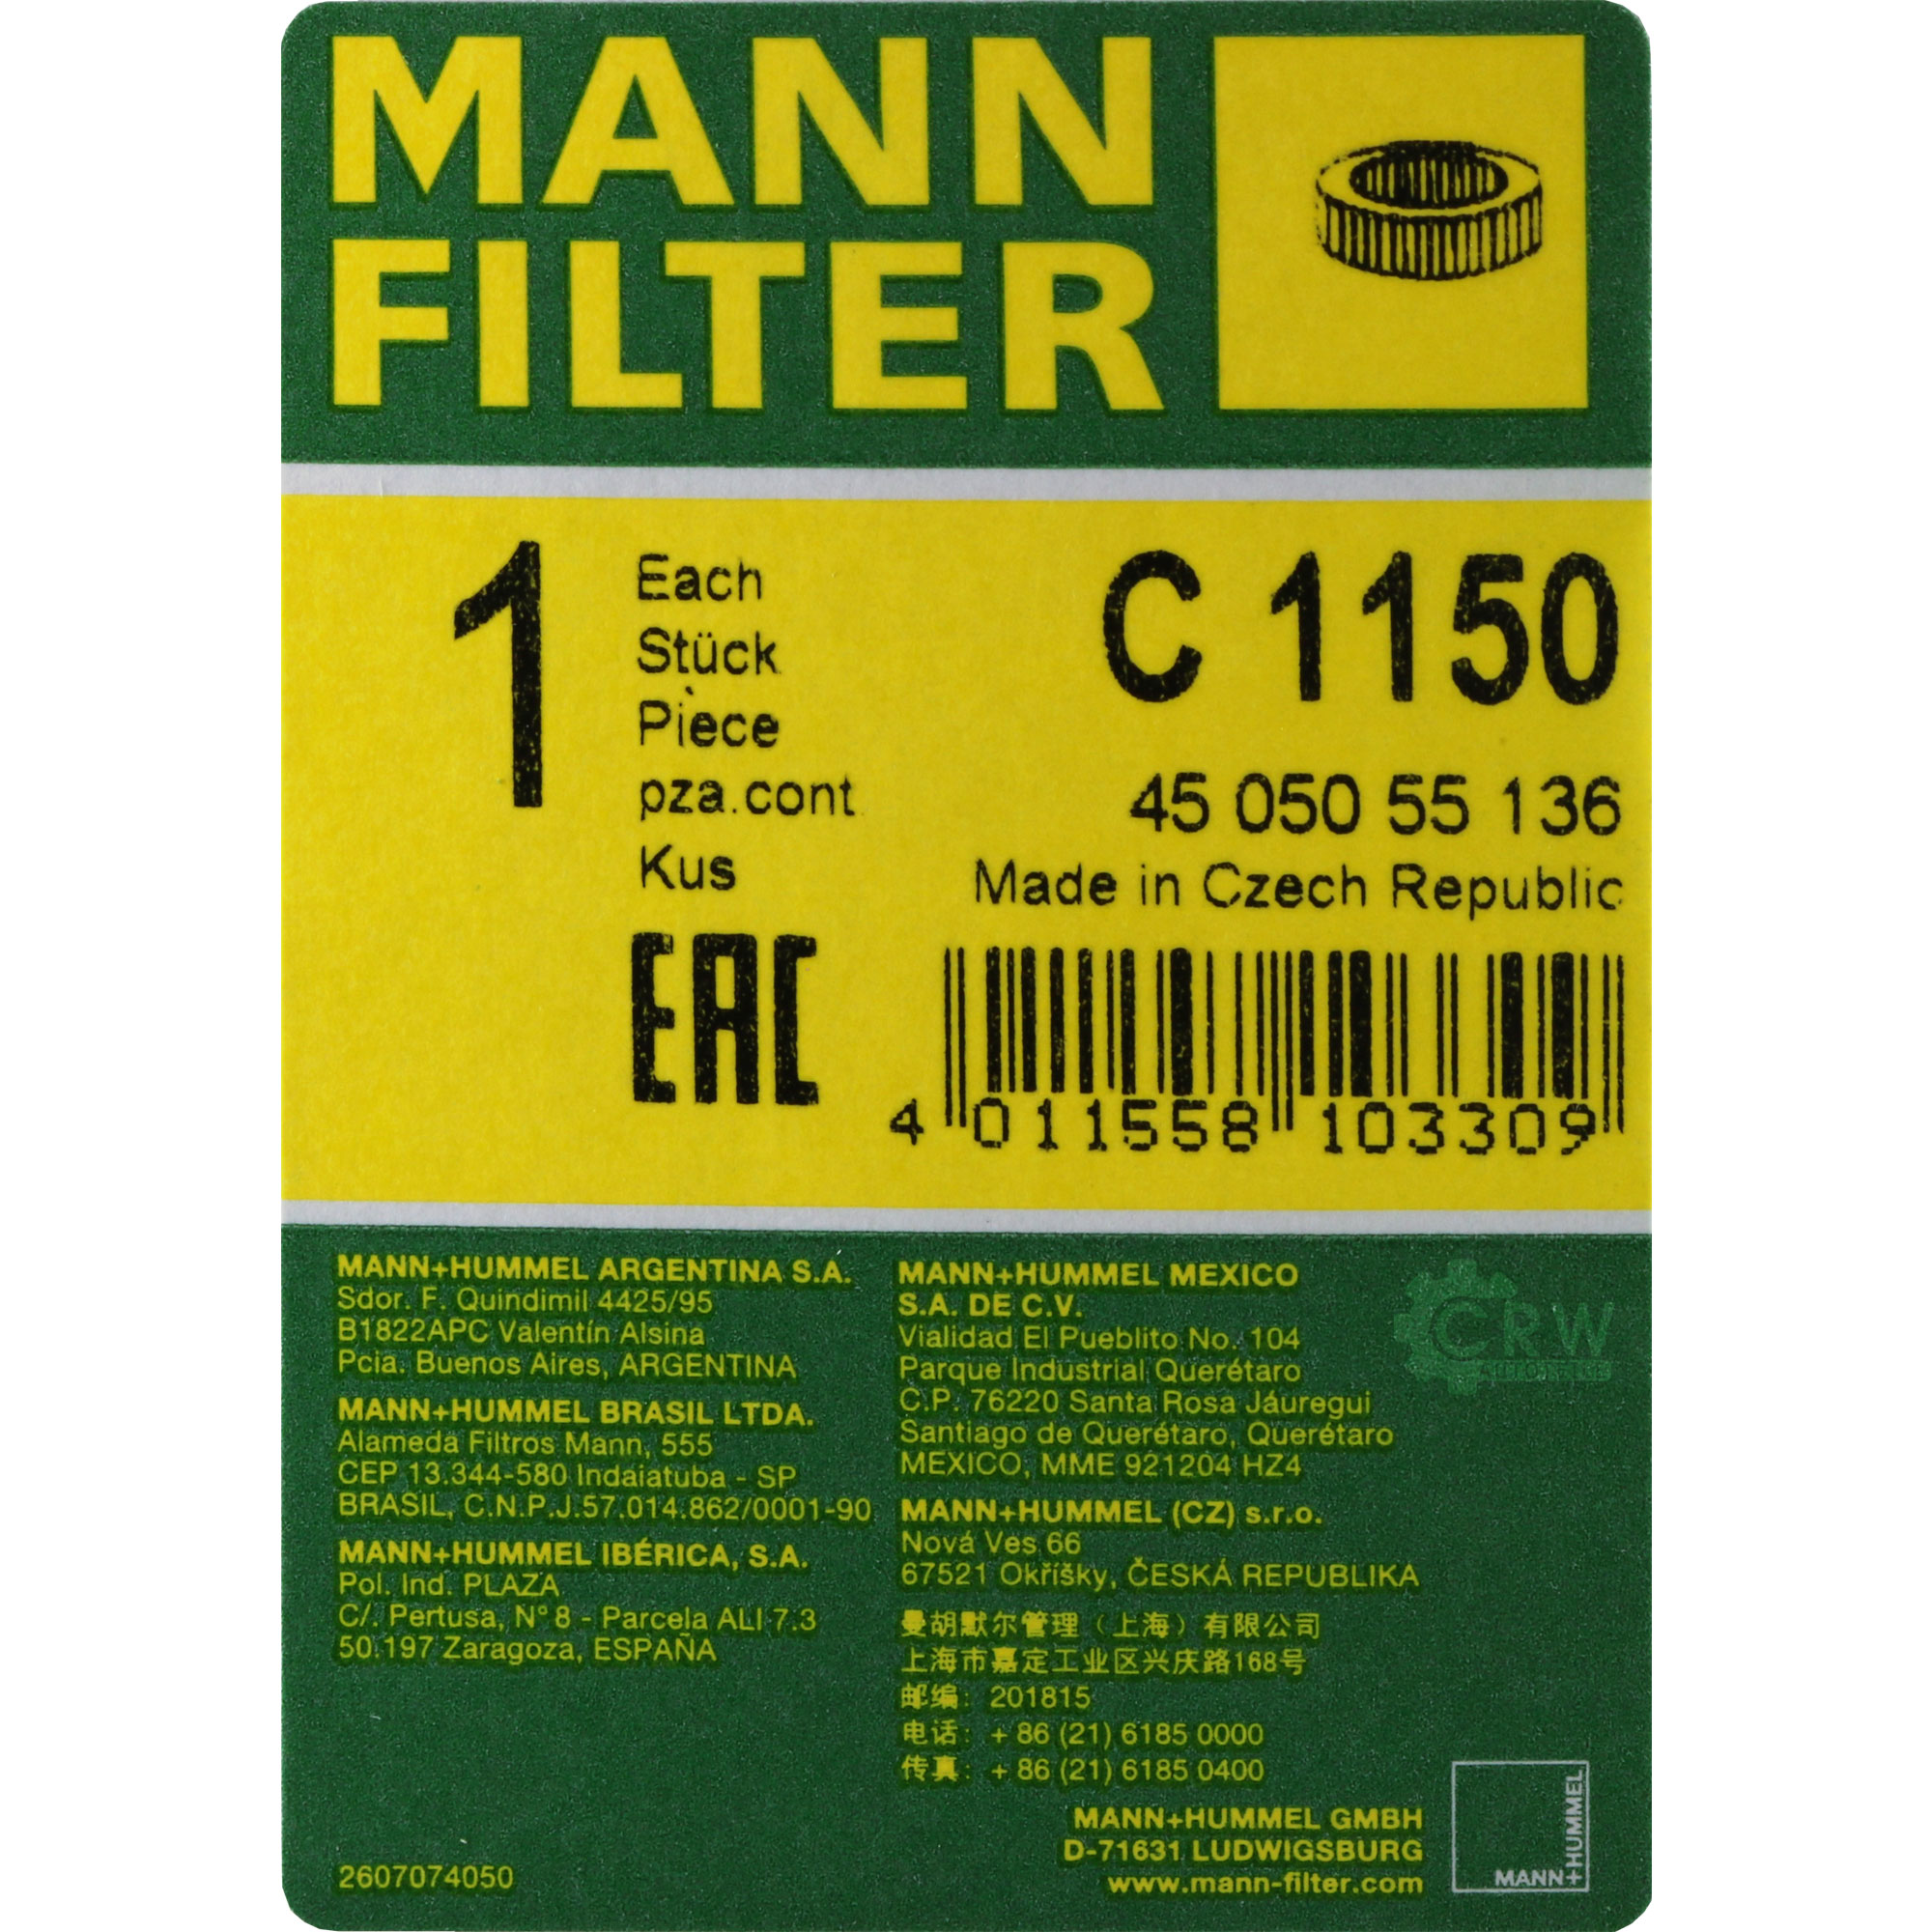 MANN-FILTER Luftfilter für Skoda 105120 742 1.0 1.2 744 110 Coupe 120G 130G